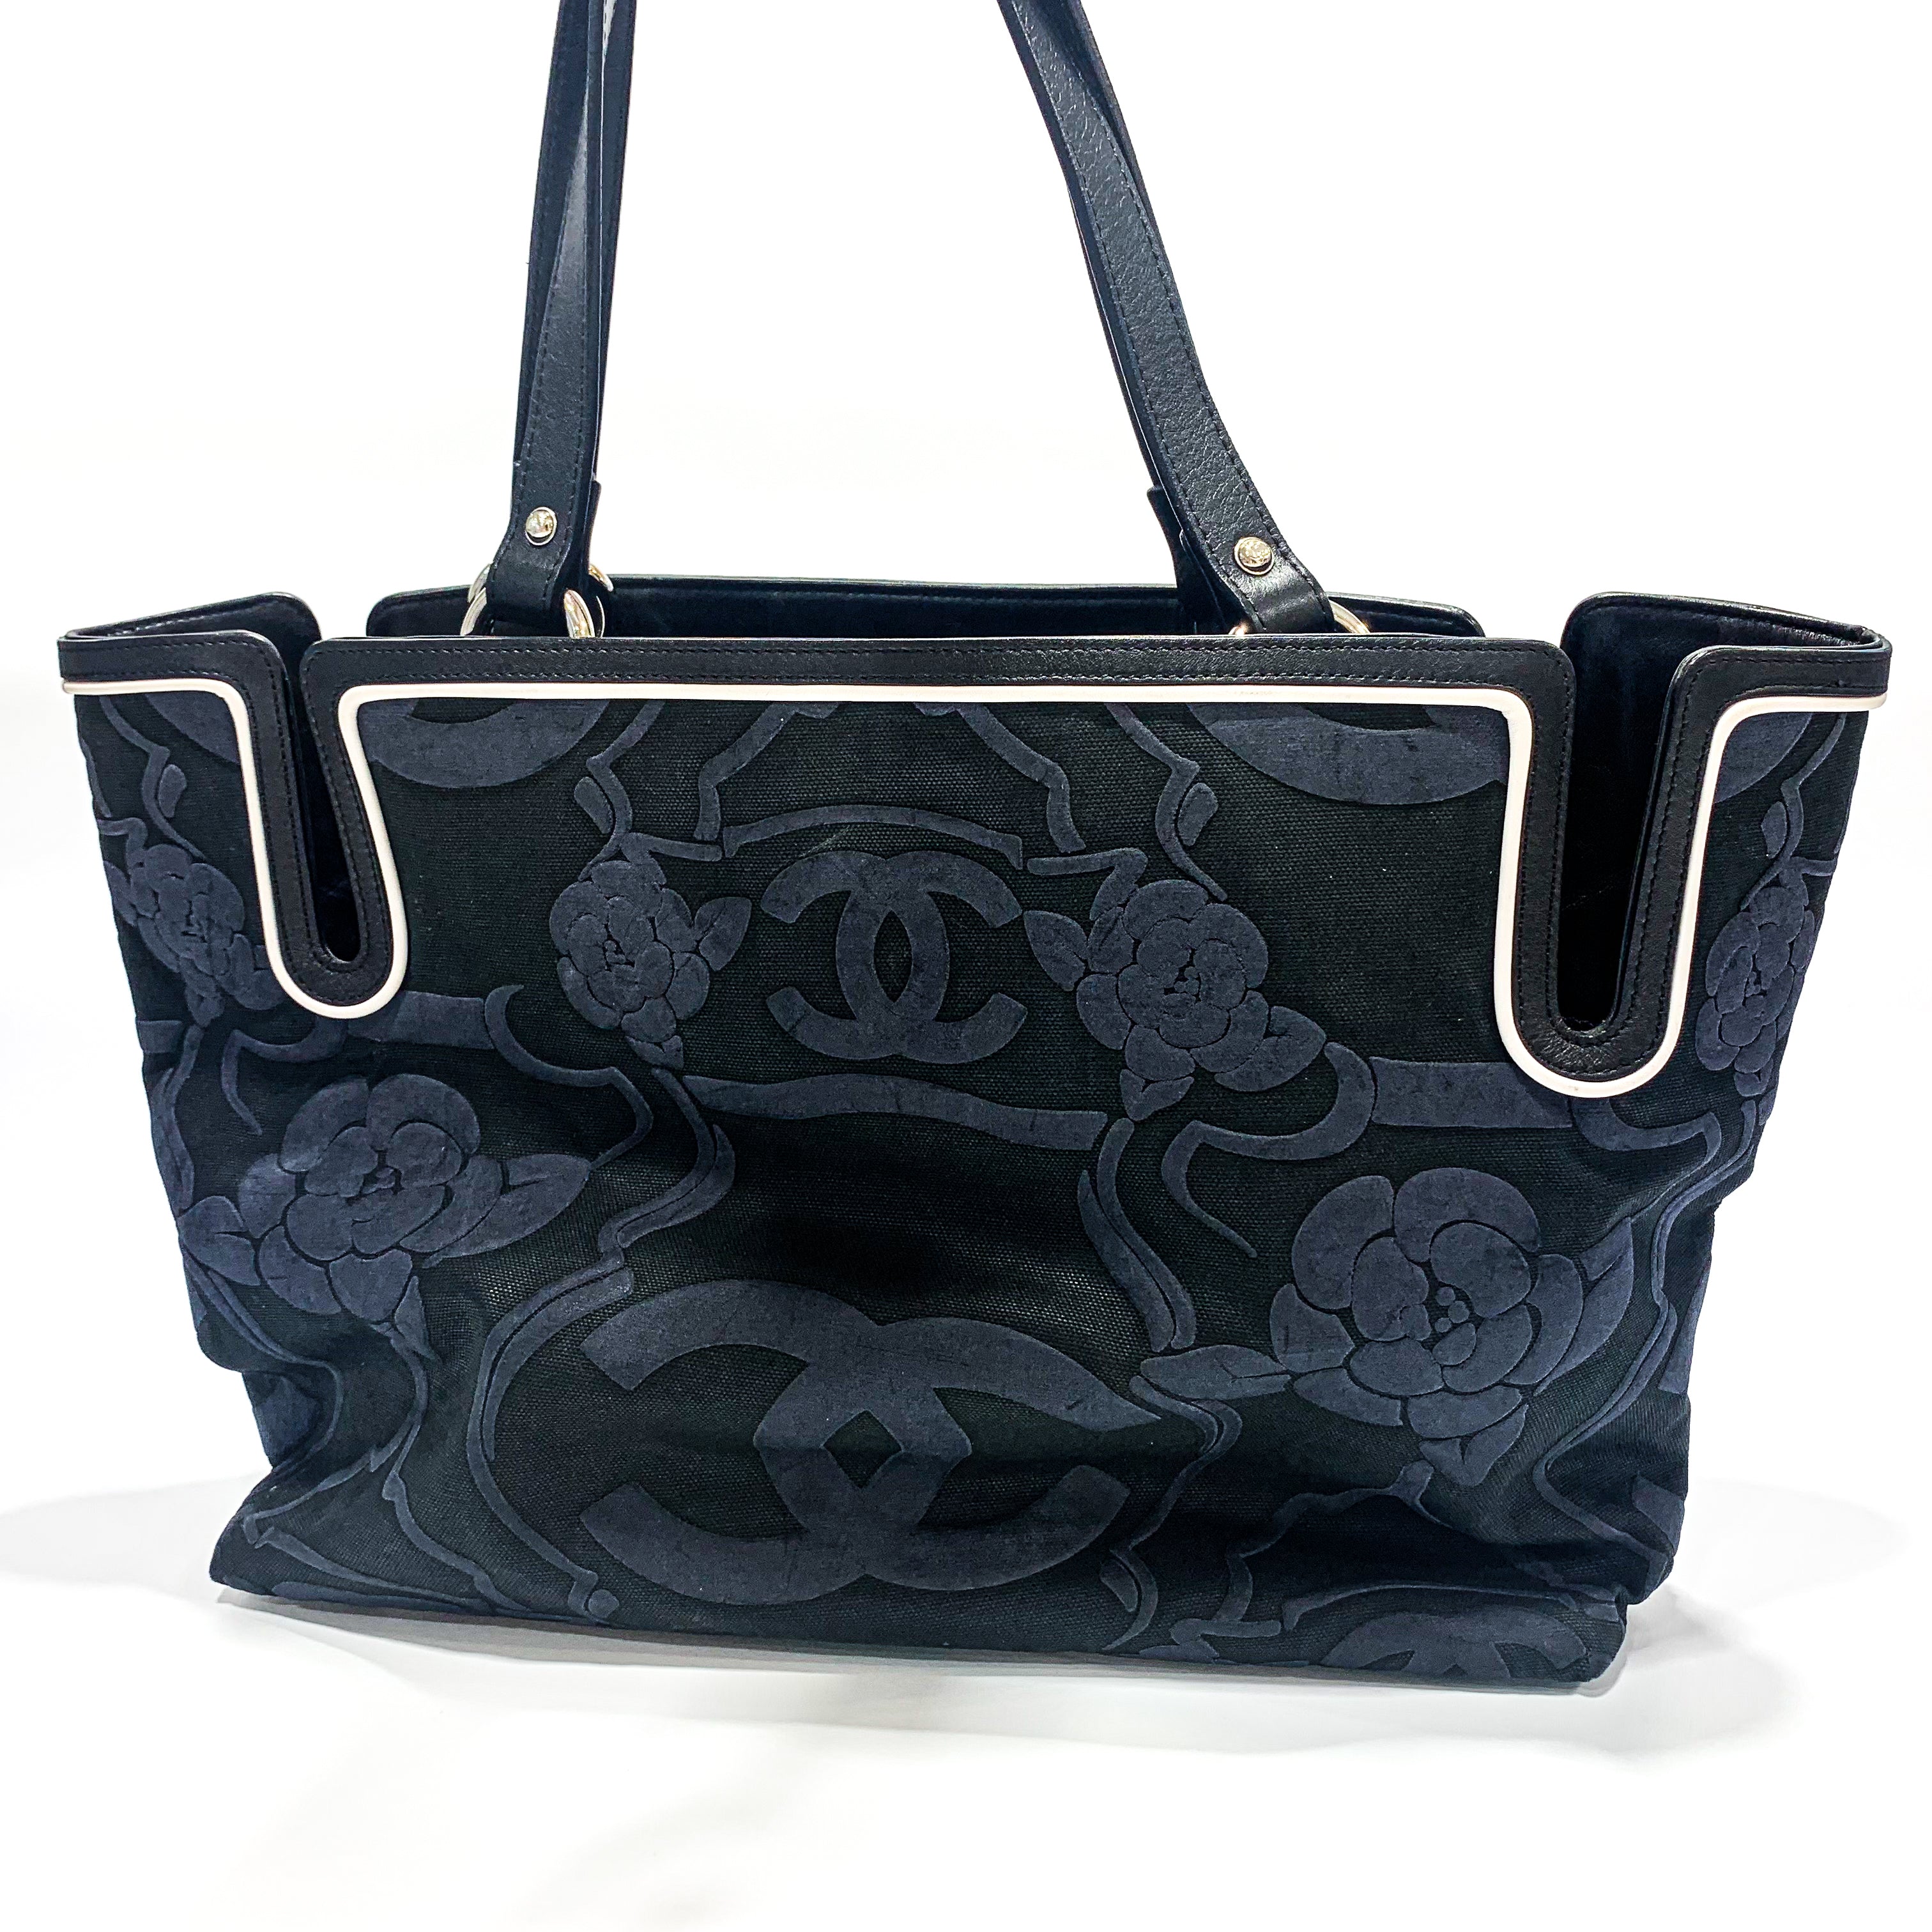 Chanel Camellia Canvas Tote Bag Small Black